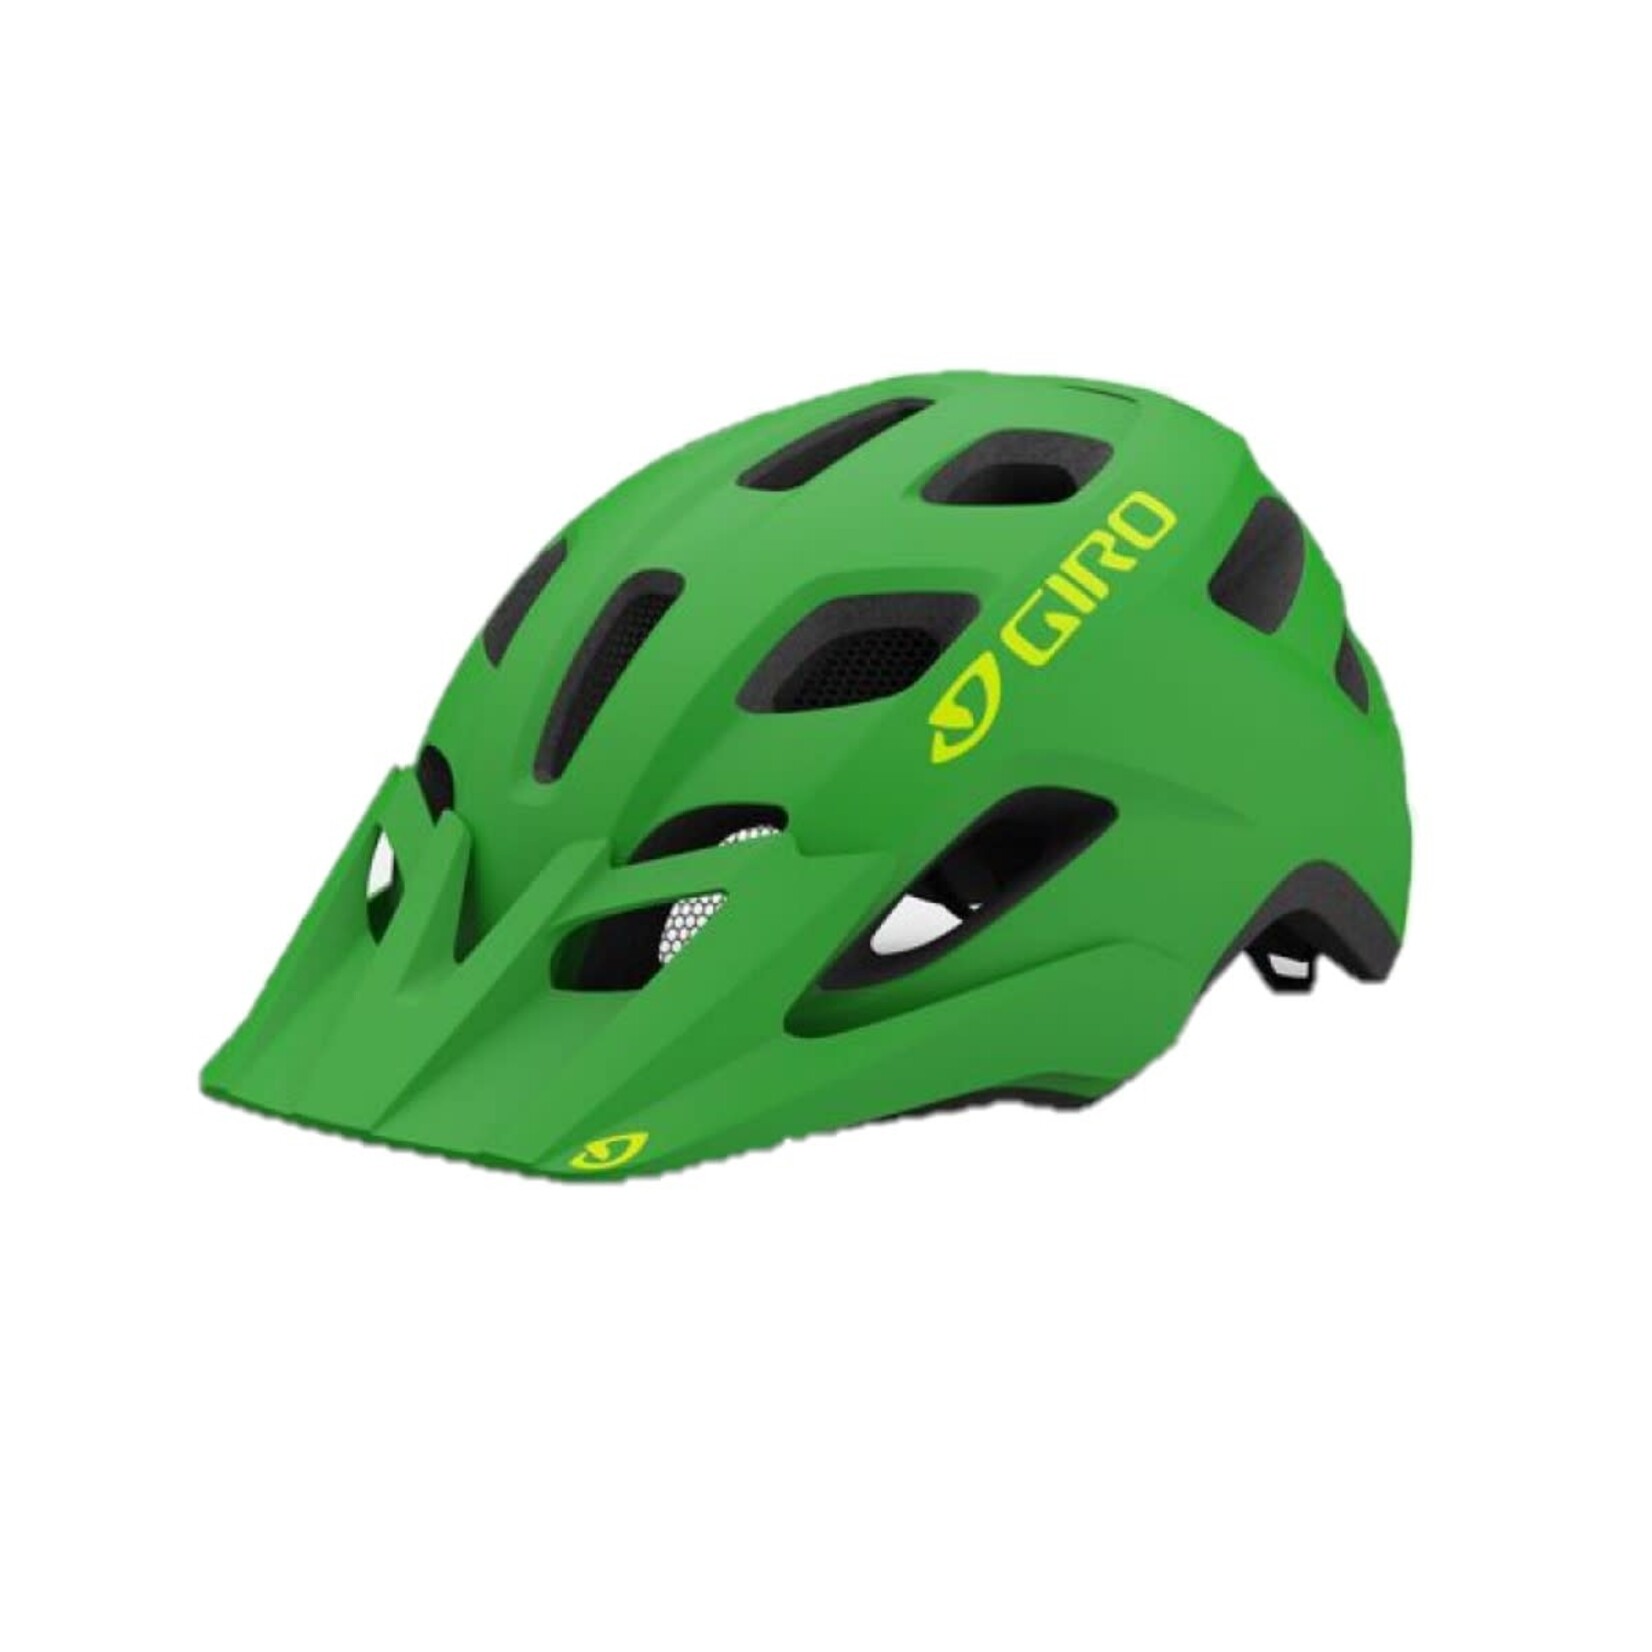 Giro Giro Tremor MIPS Youth/Child Helmet